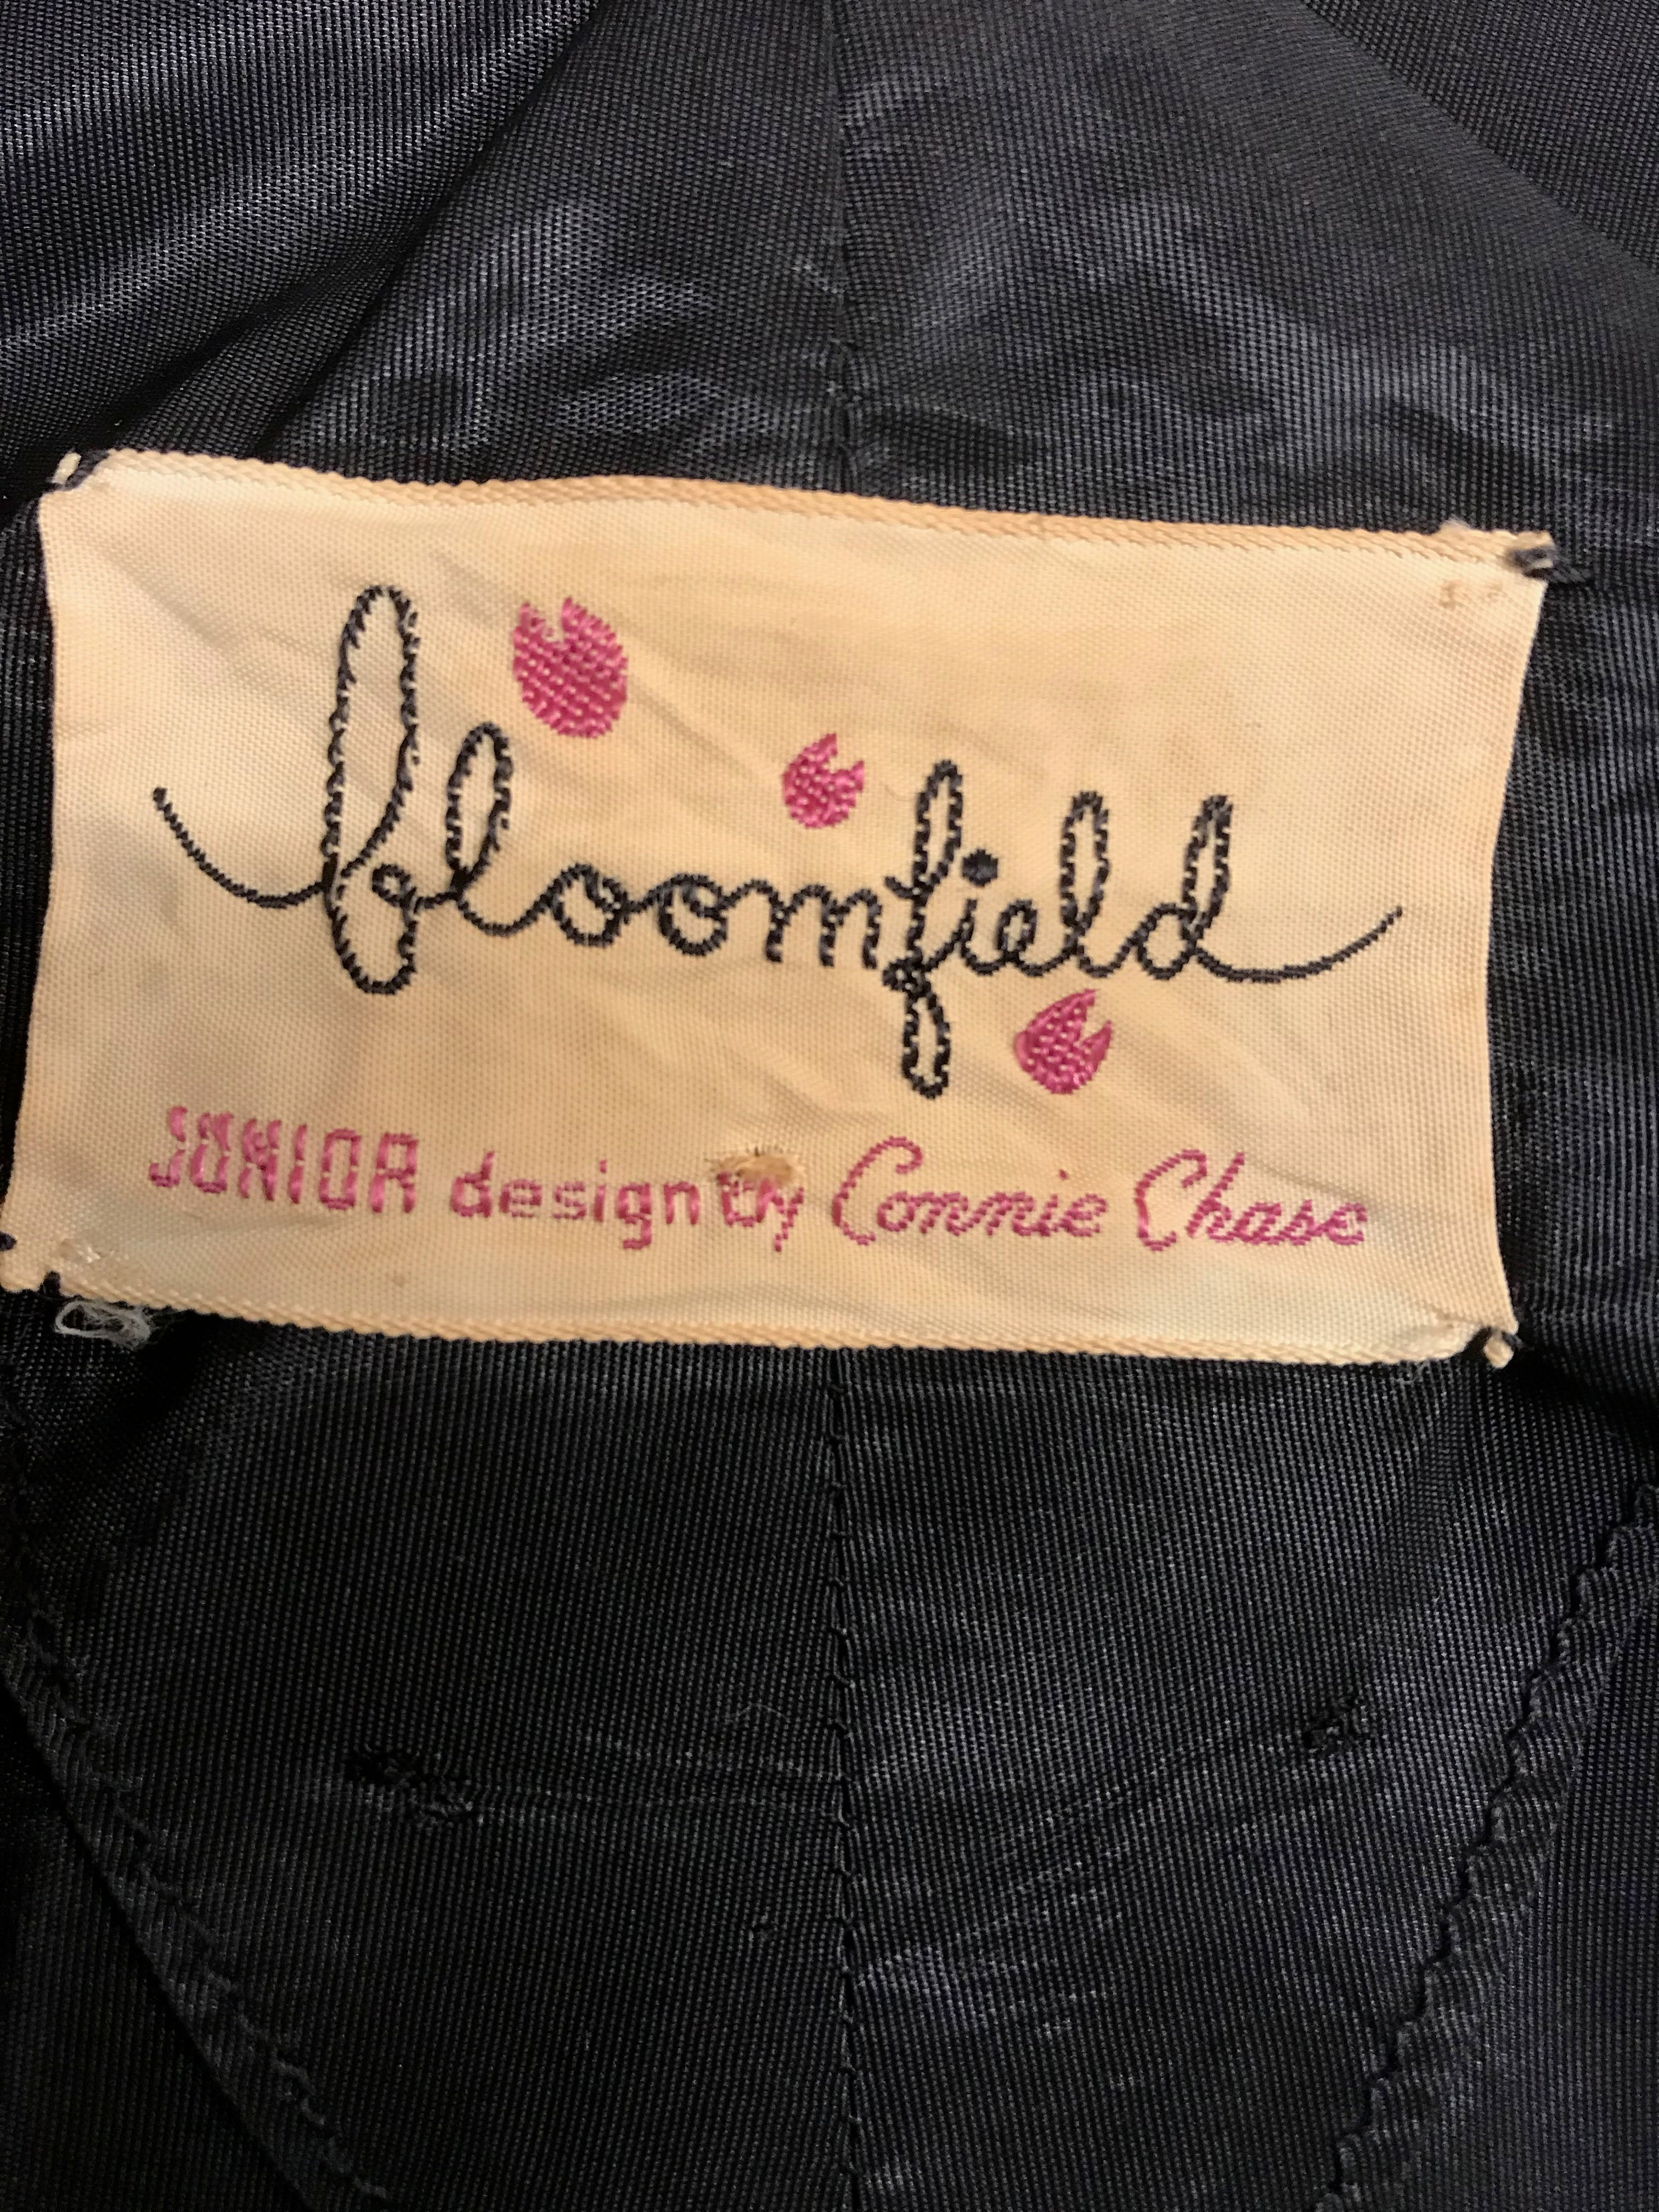 orginal 1950s von Bloomfield Junior by Connie Chase dress